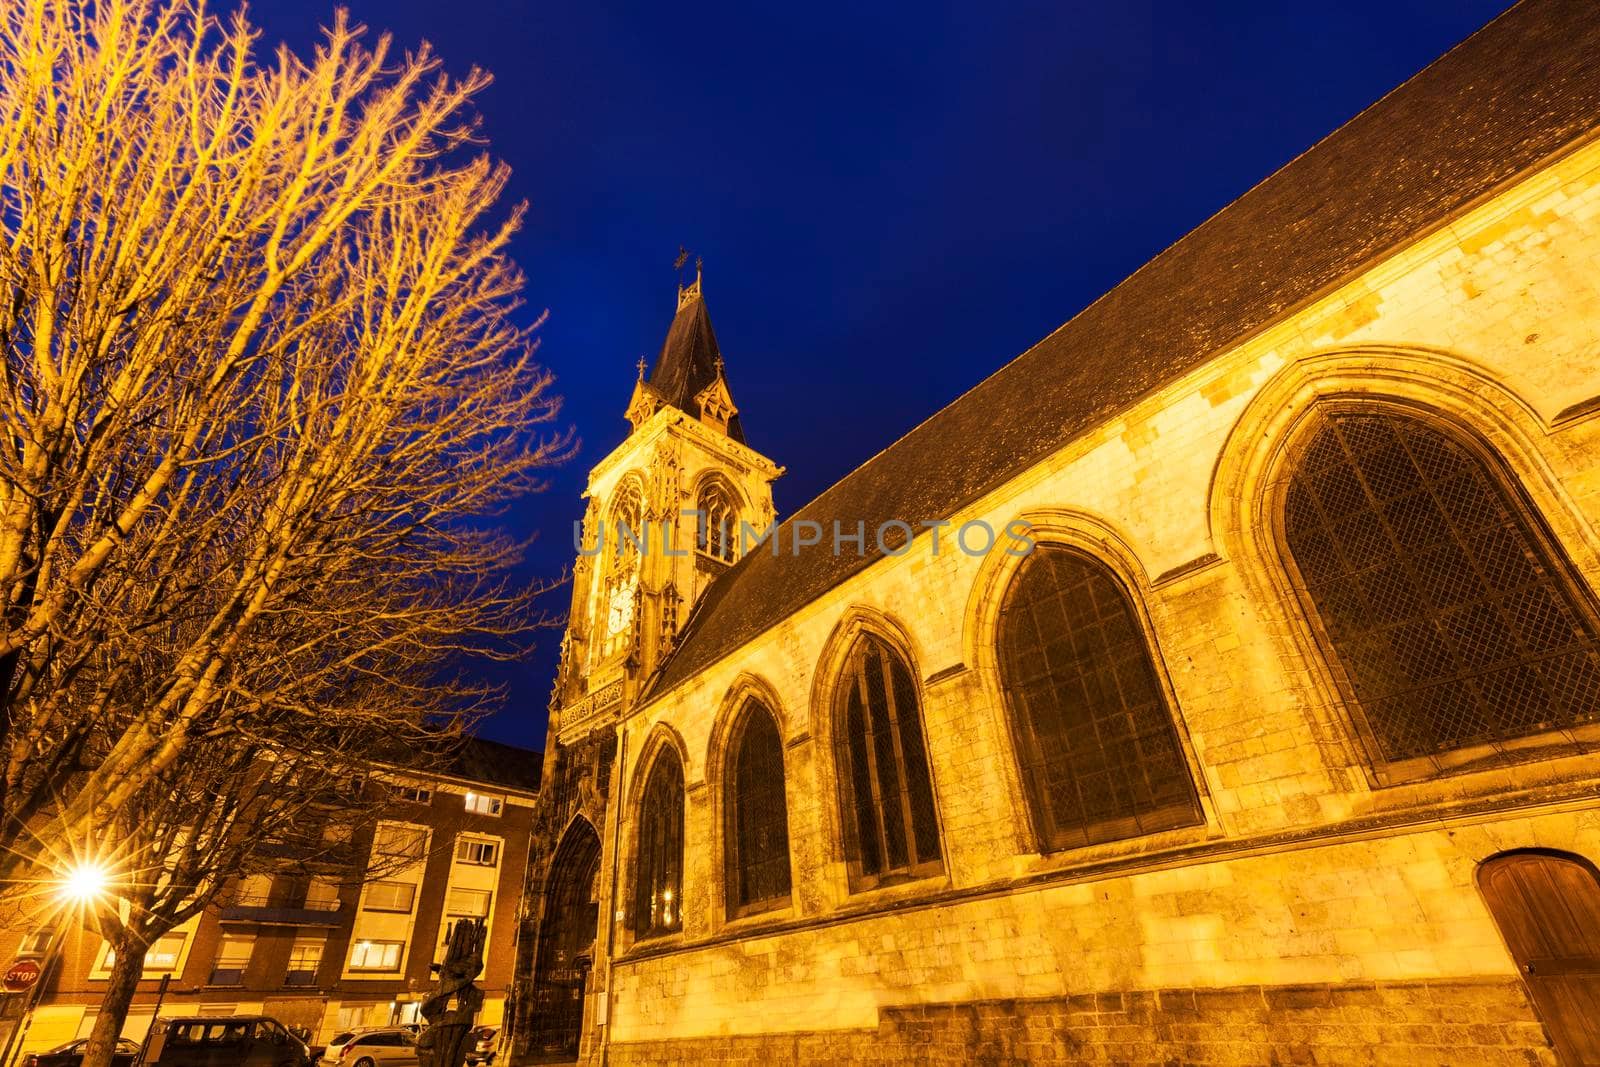 Saint-Leu Church in Amiens by benkrut